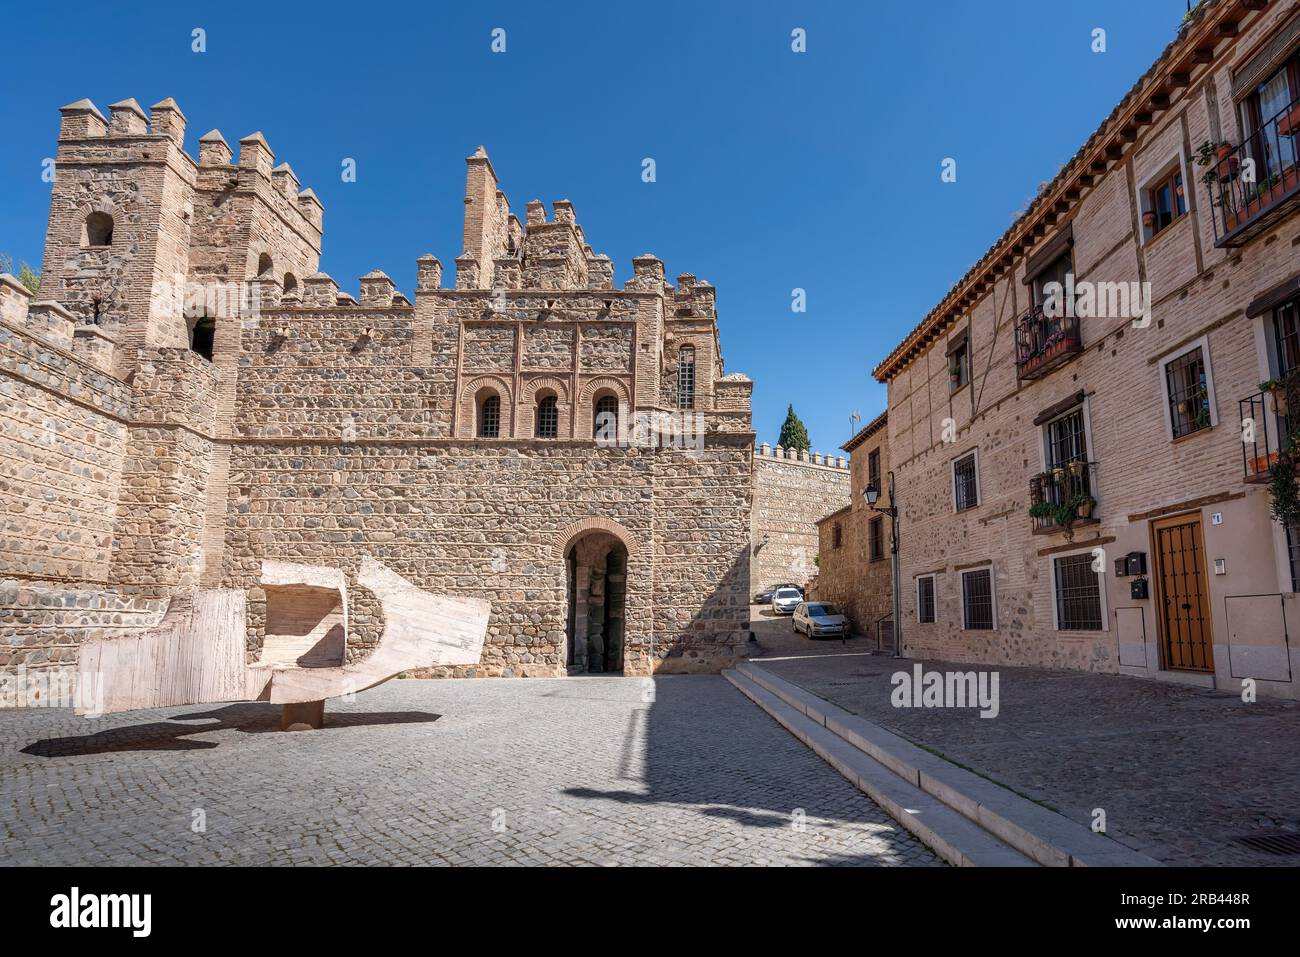 Puerta de Alfonso VI Gate (Puerta de Bisagra) - Toledo, Spain Stock Photo